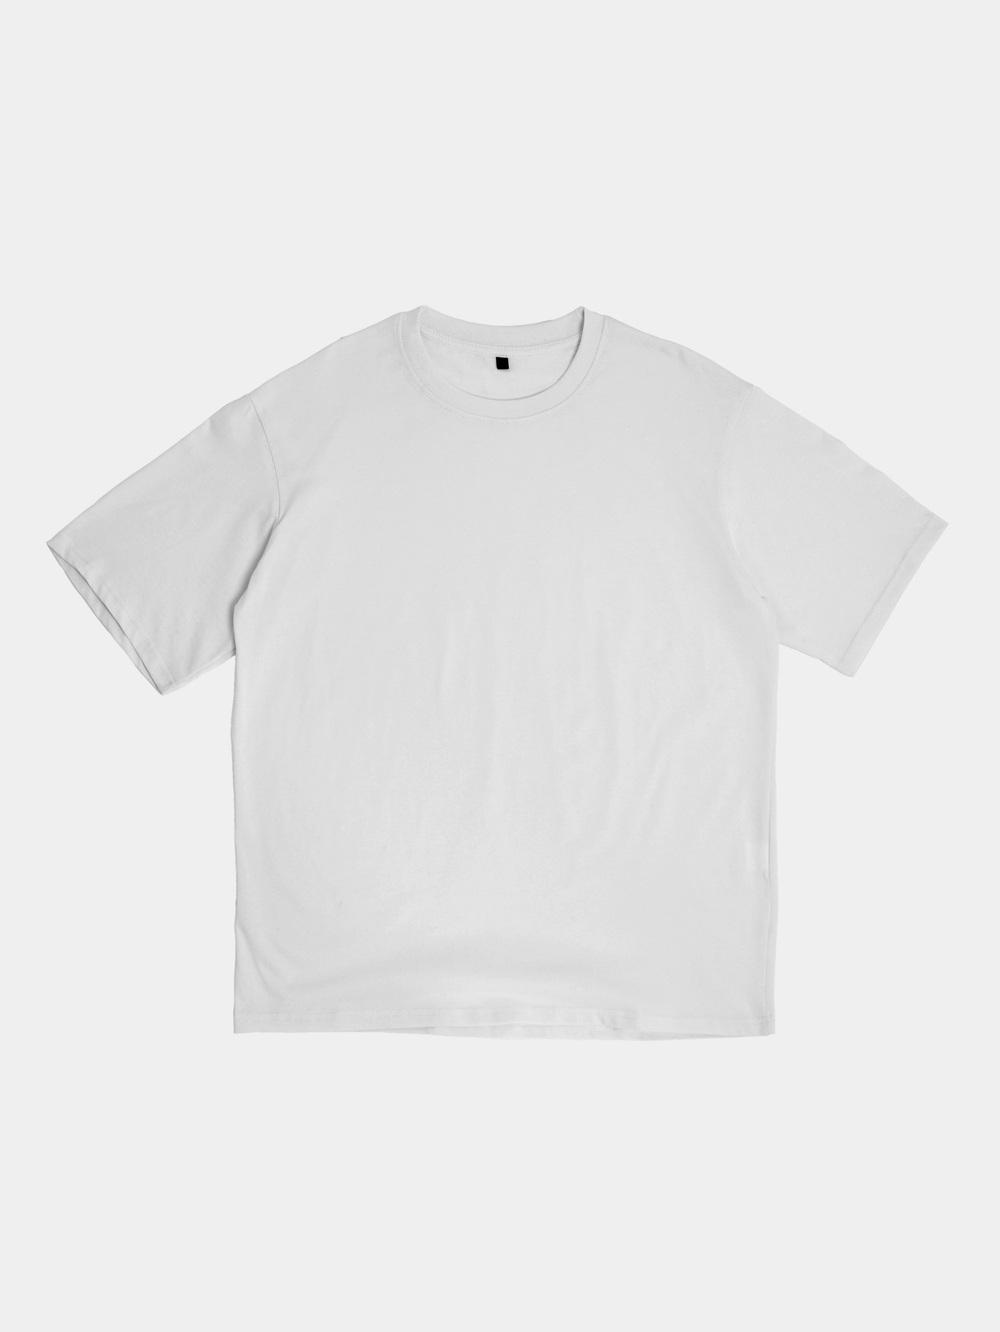 Дисконт футболка #345 оверсайз (белый) 100% хлопок, плотность 200 г.